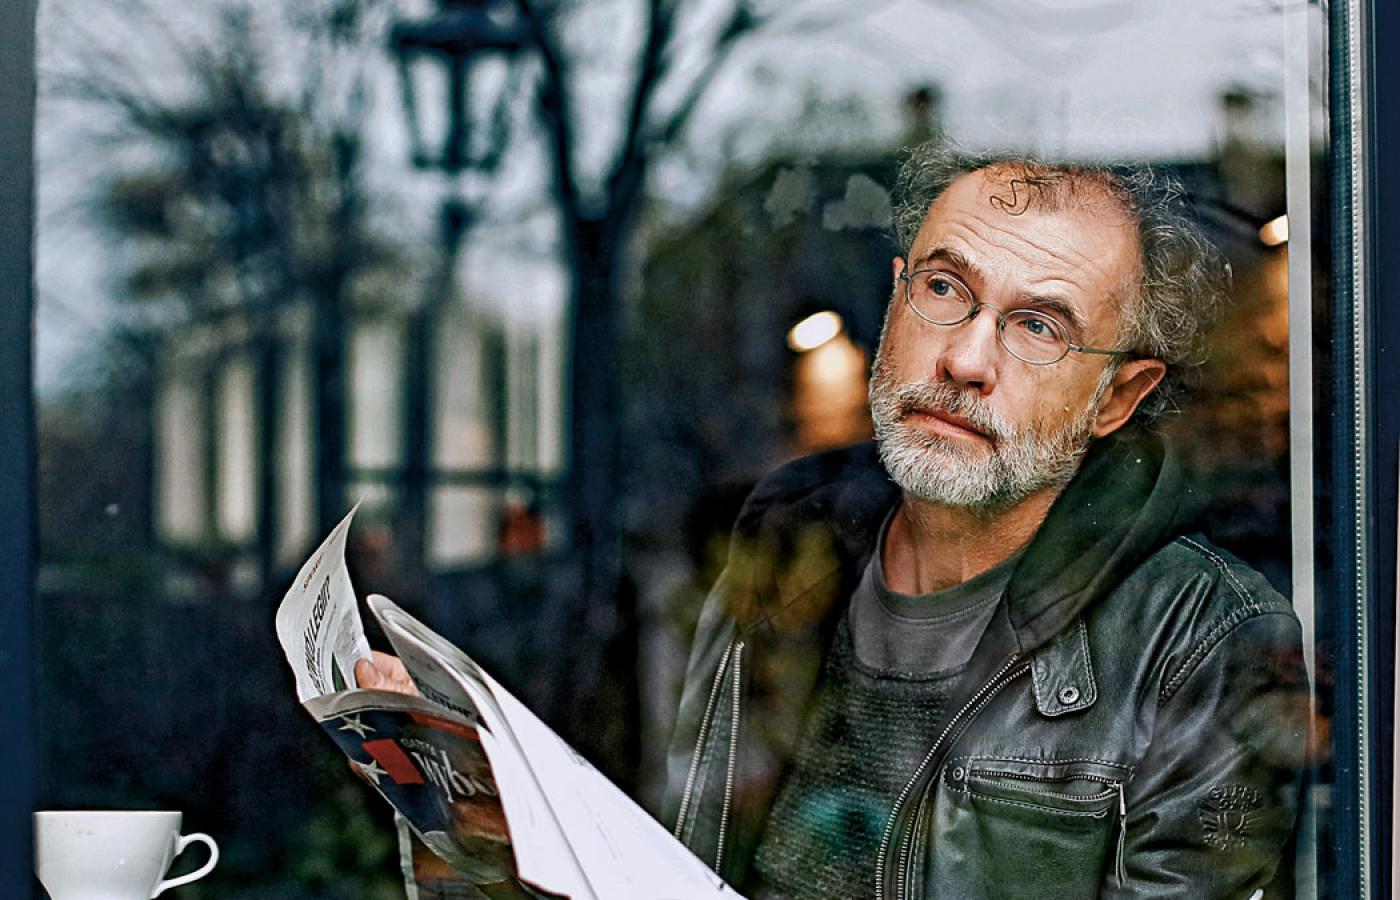 Piotr Dumała (ur. 1956 r.) – reżyser, scenarzysta i scenograf filmów animowanych i fabularnych.